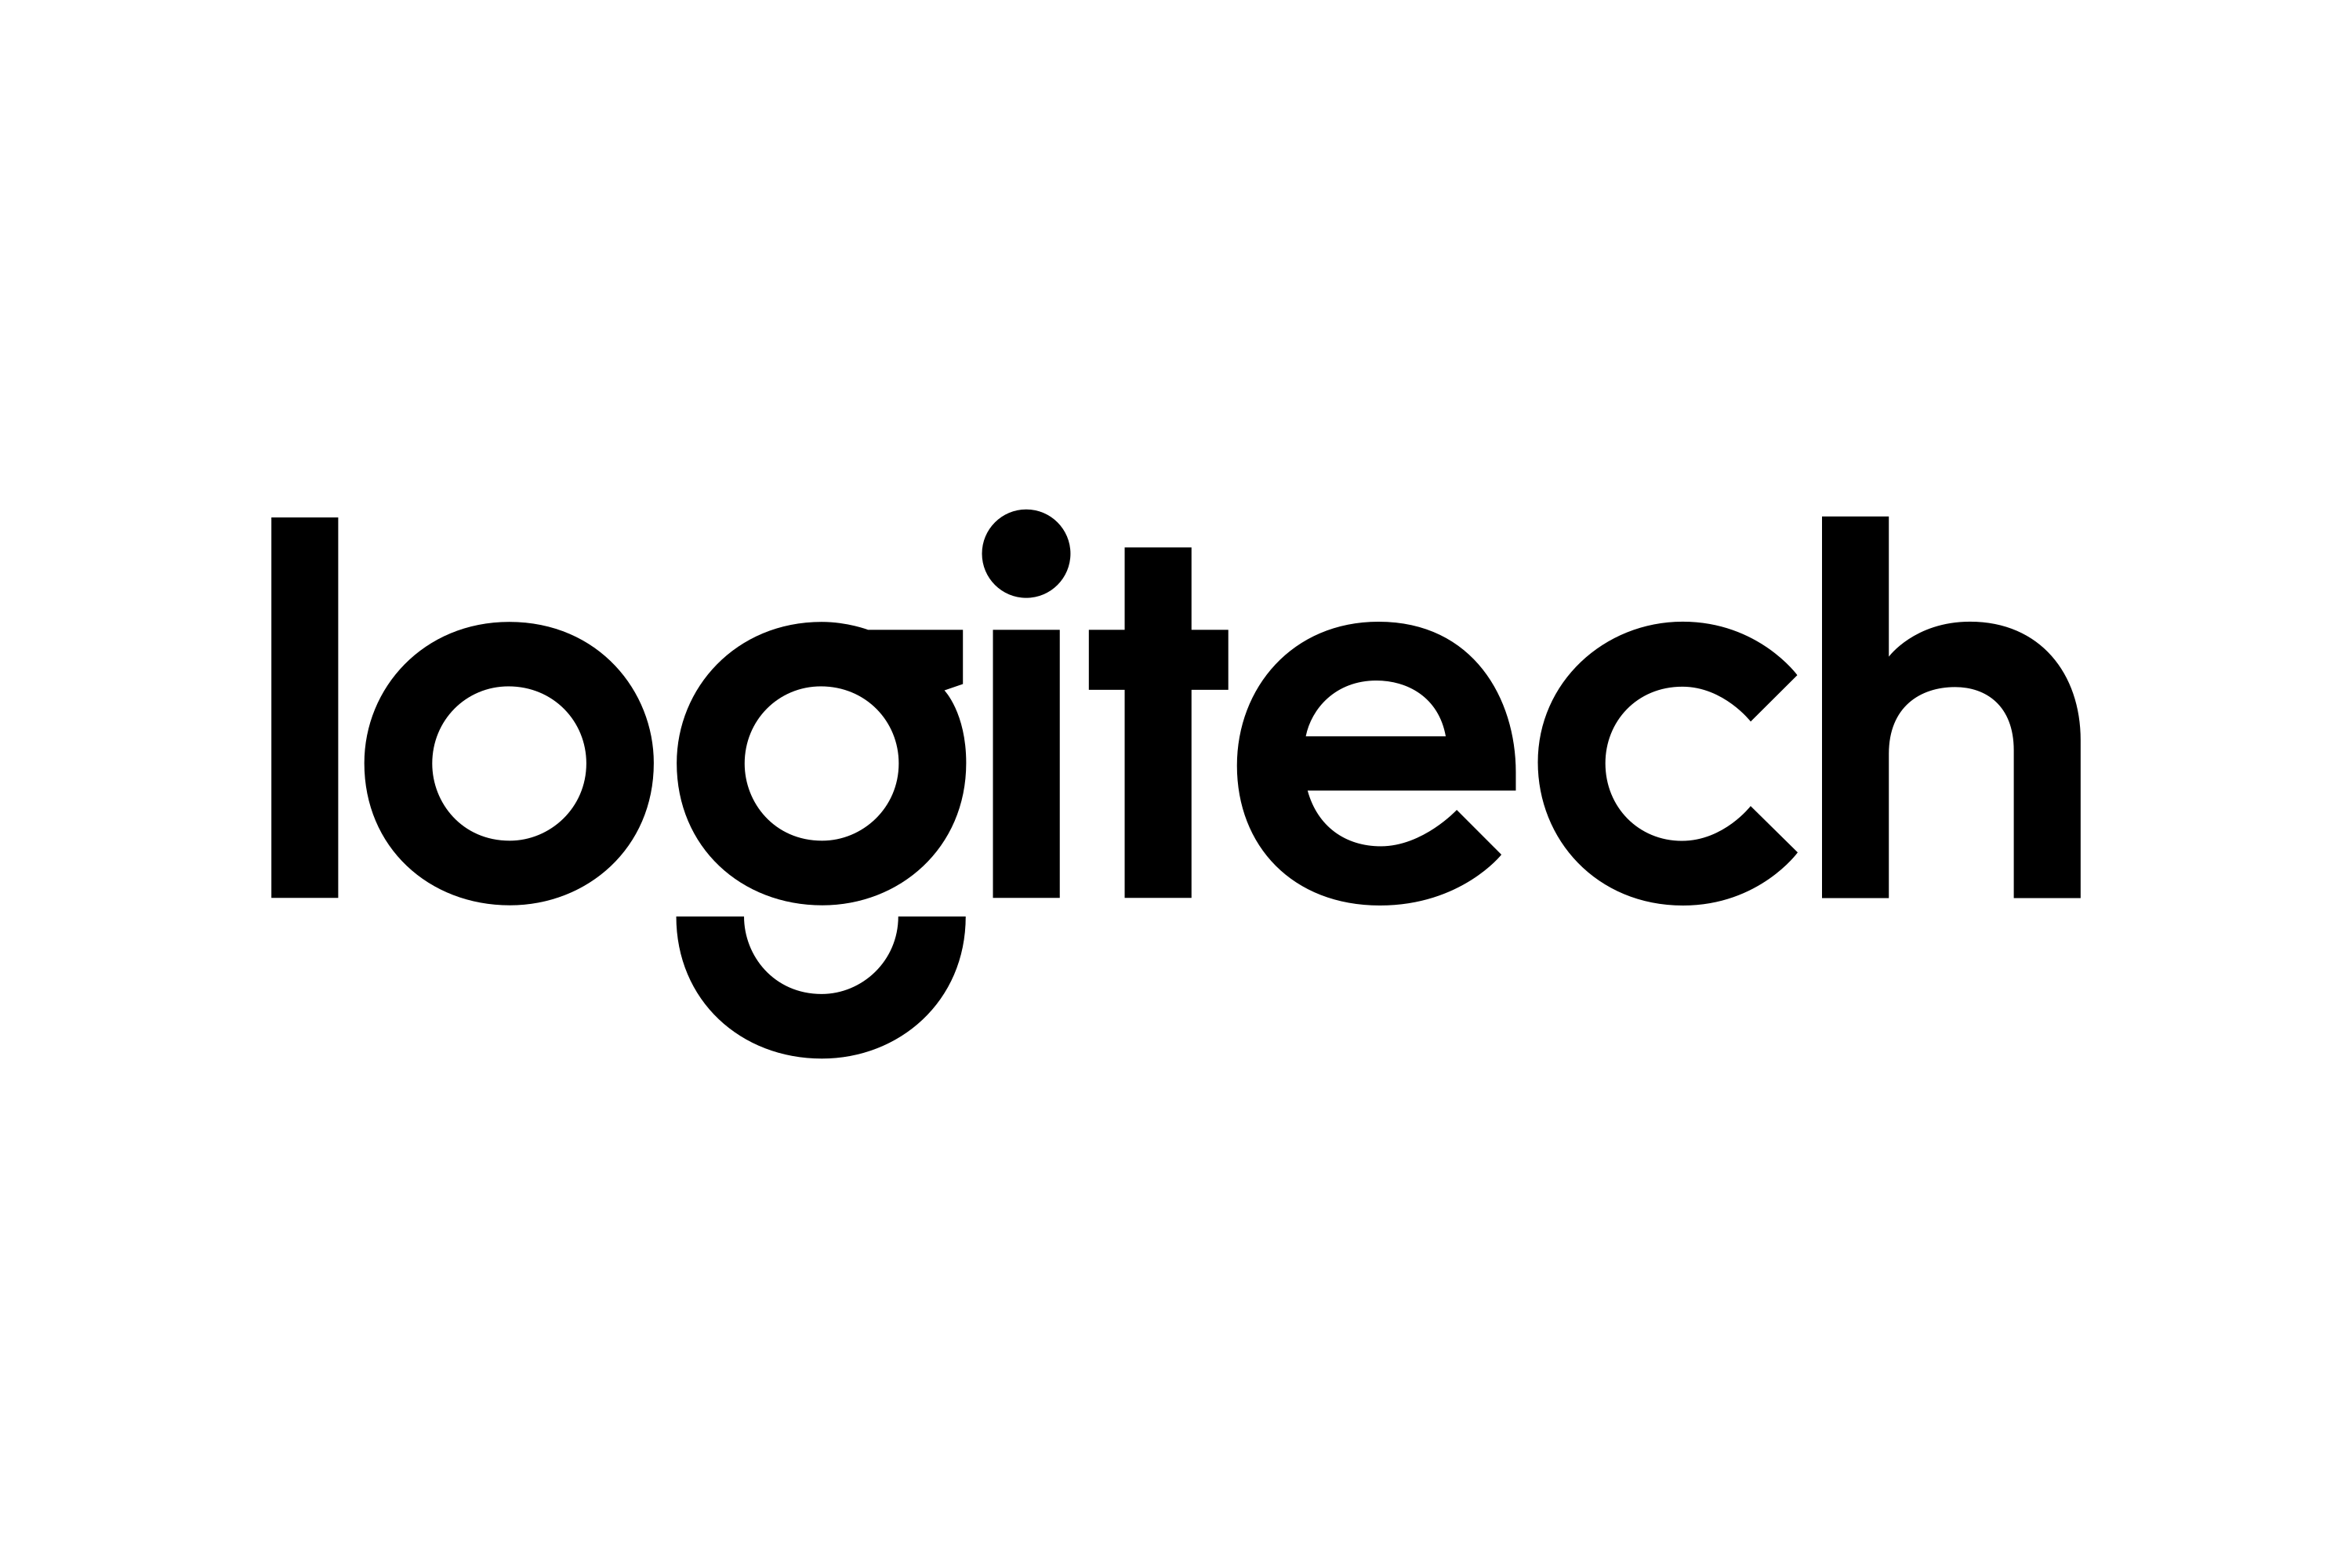 Logitech – Logos Download